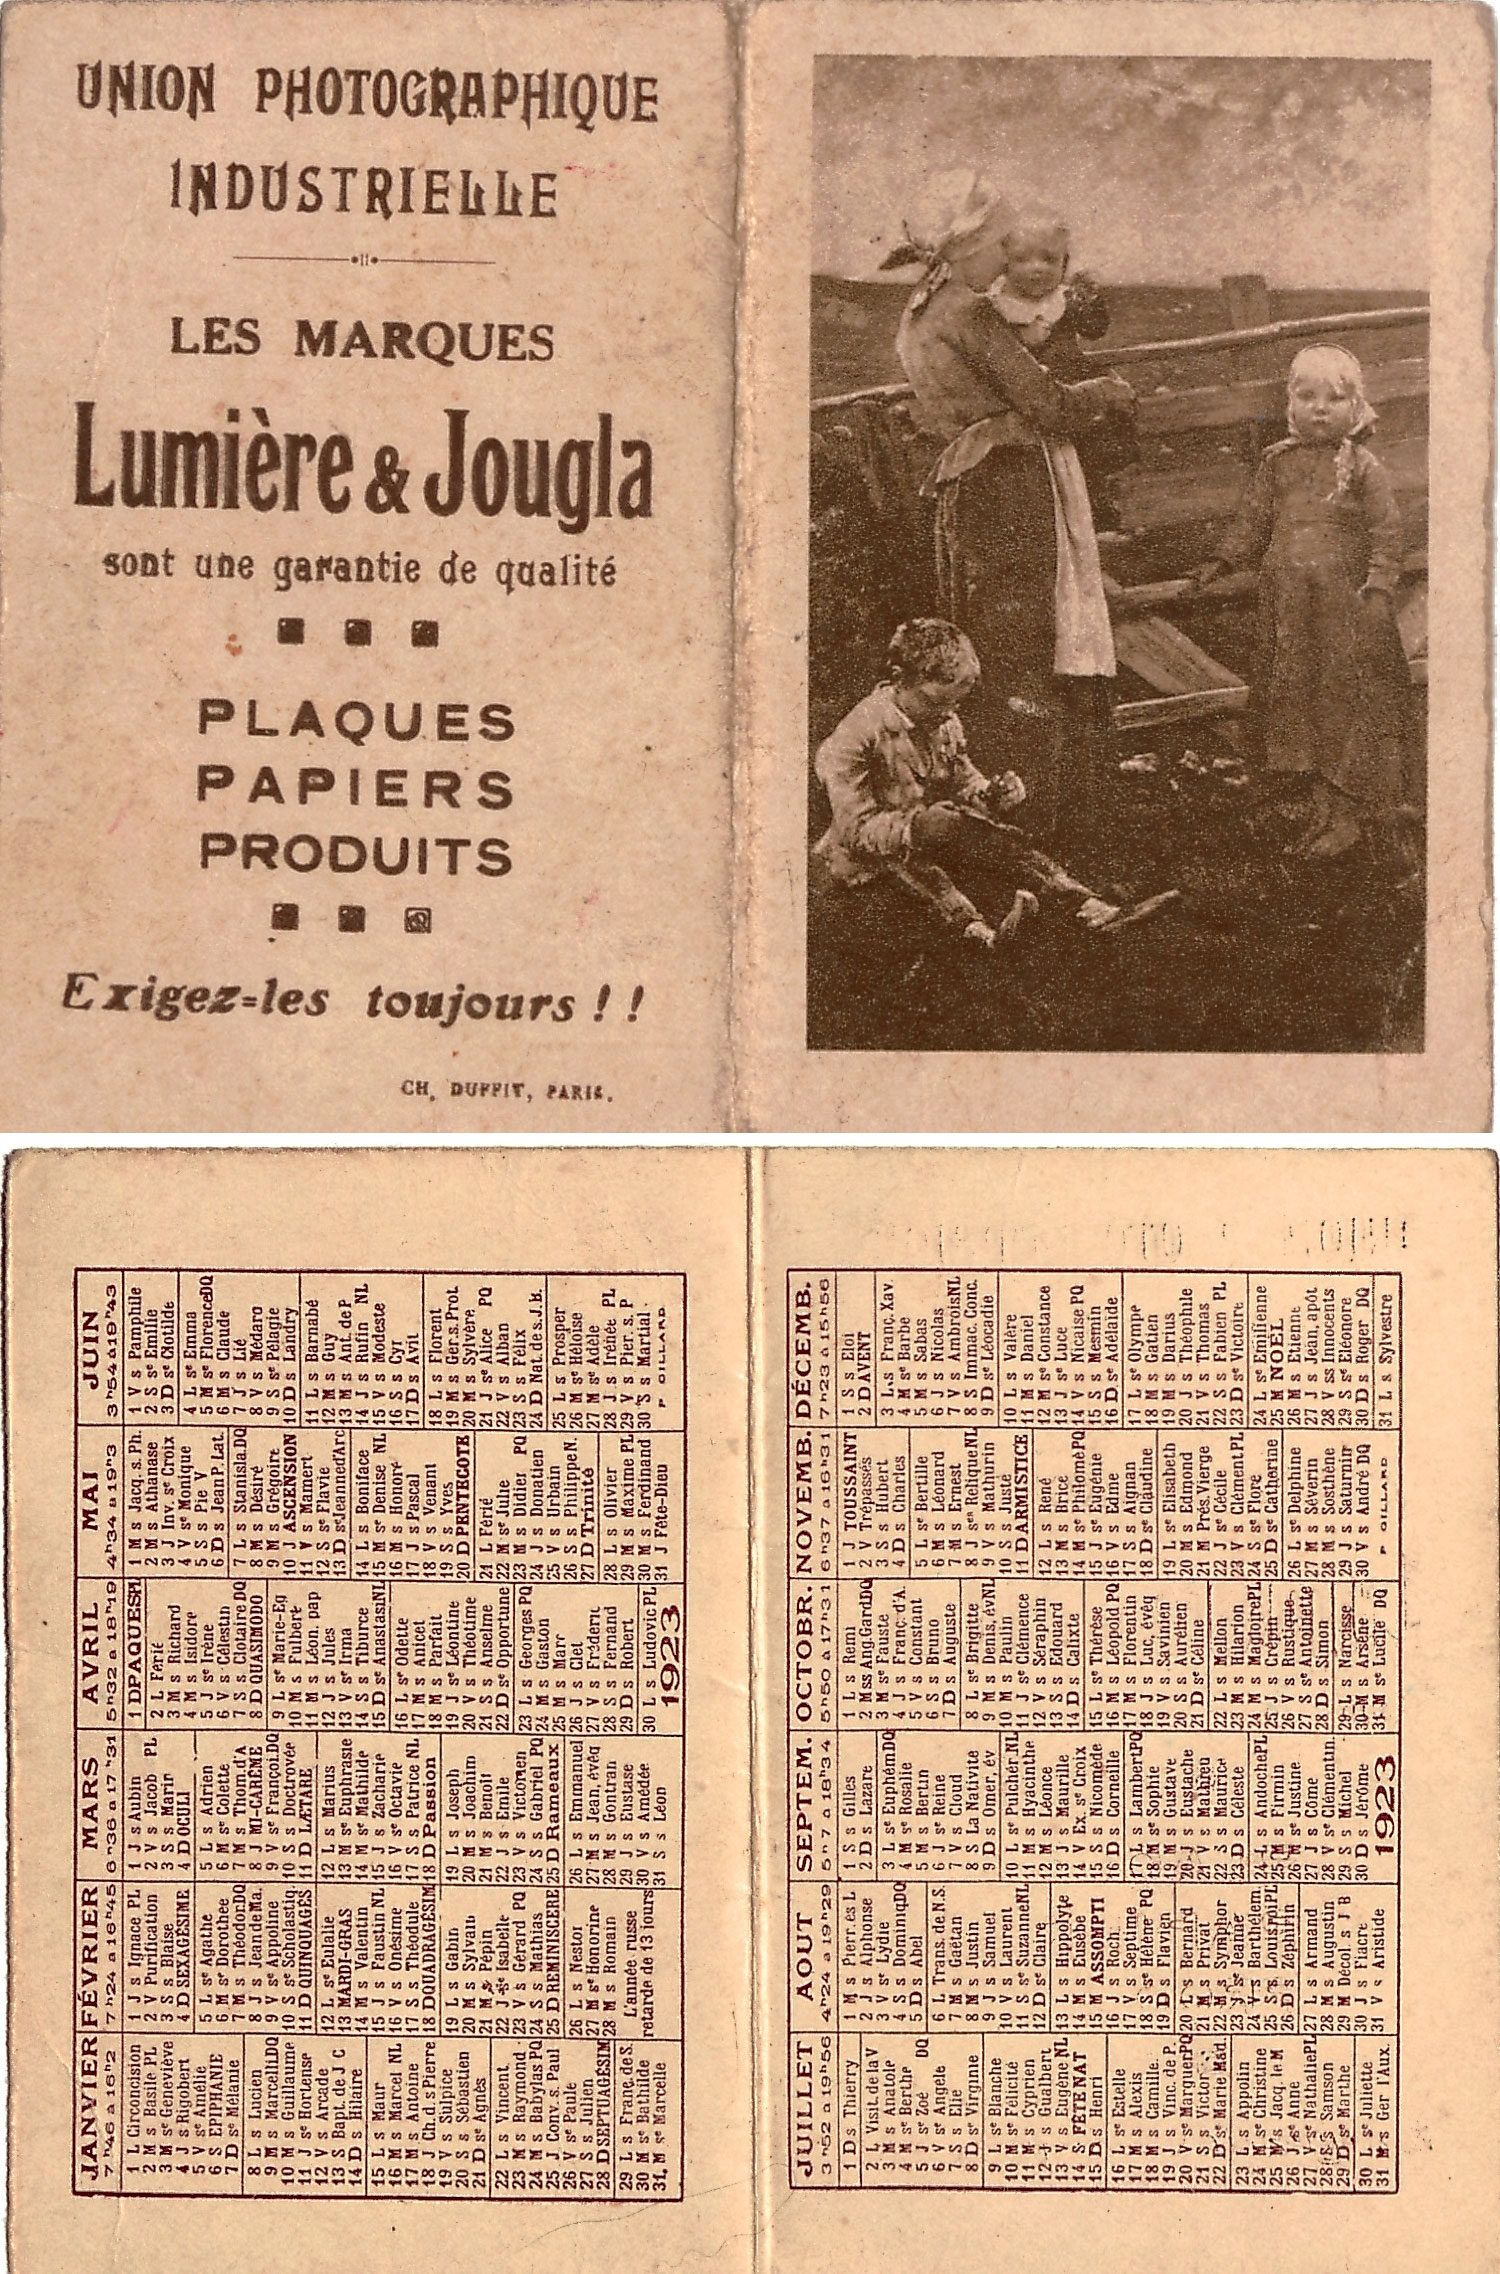 Calendrier Lumière Jougla 1923